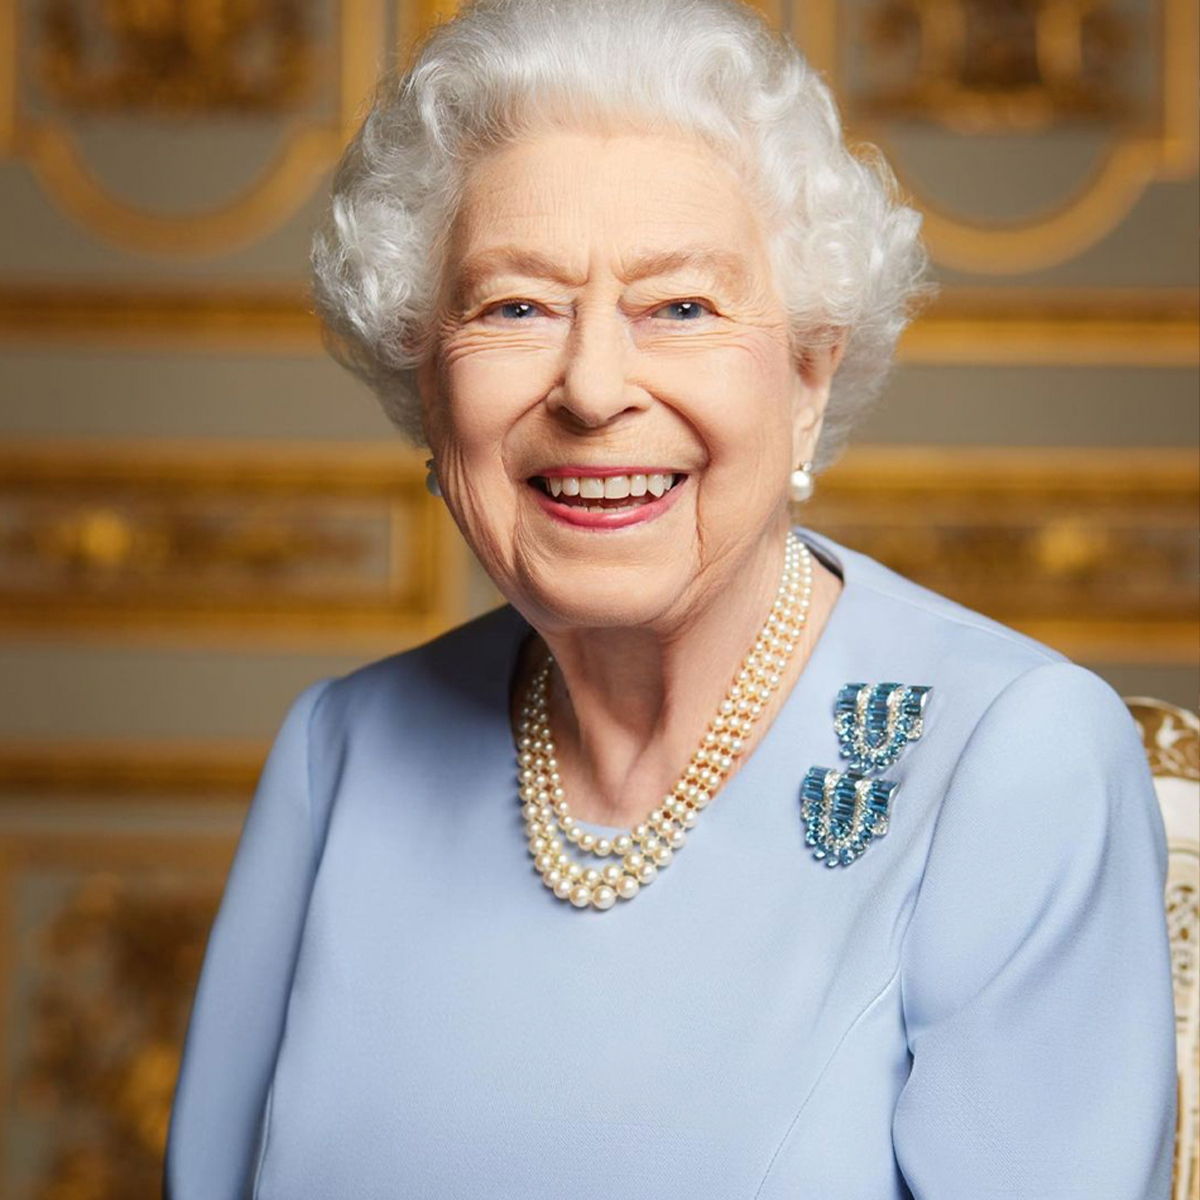 New Portrait of Queen Elizabeth II Released Before Her Funeral